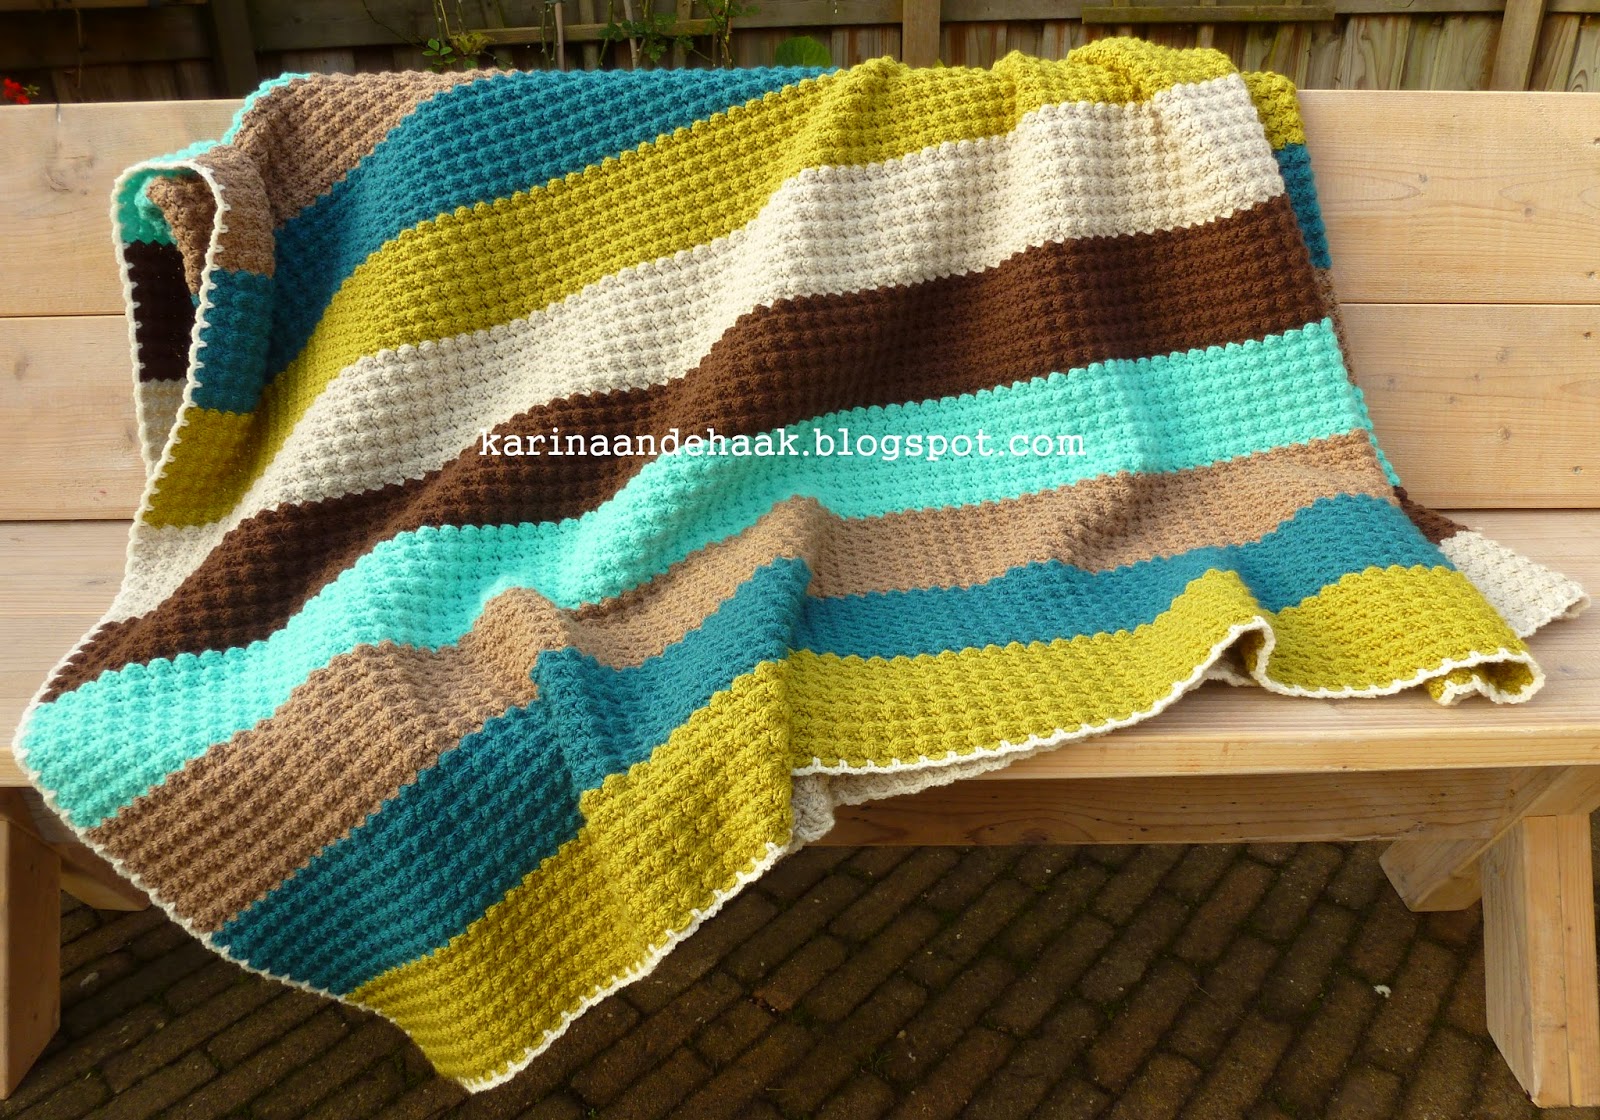 Kennis maken Buskruit stad Karin aan de haak: Dikke gehaakte retro deken met patroon